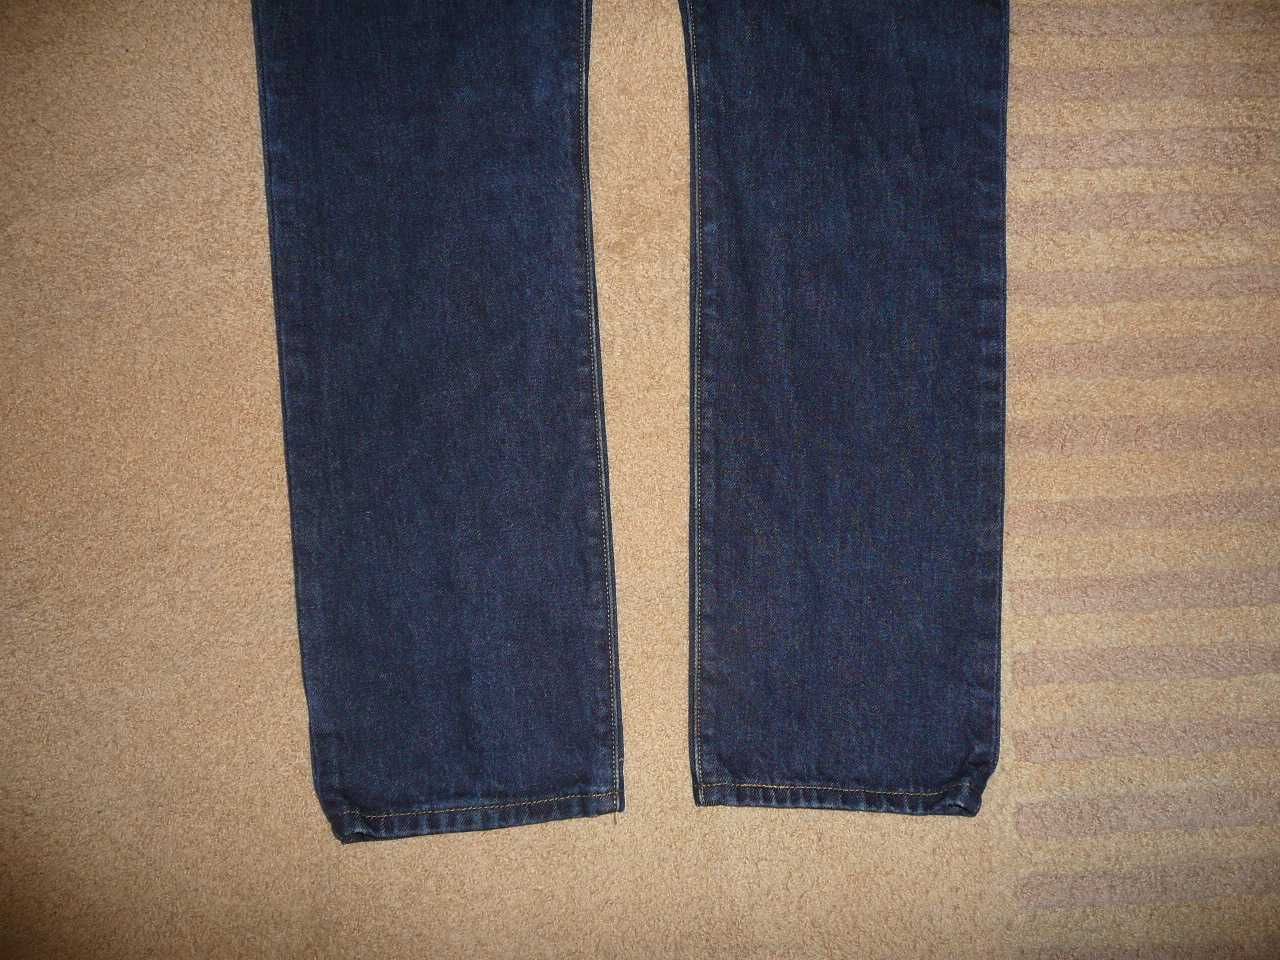 Spodnie dżinsy LEVIS 501 W29/L32=39,5/106cm jeansy PREMIUM